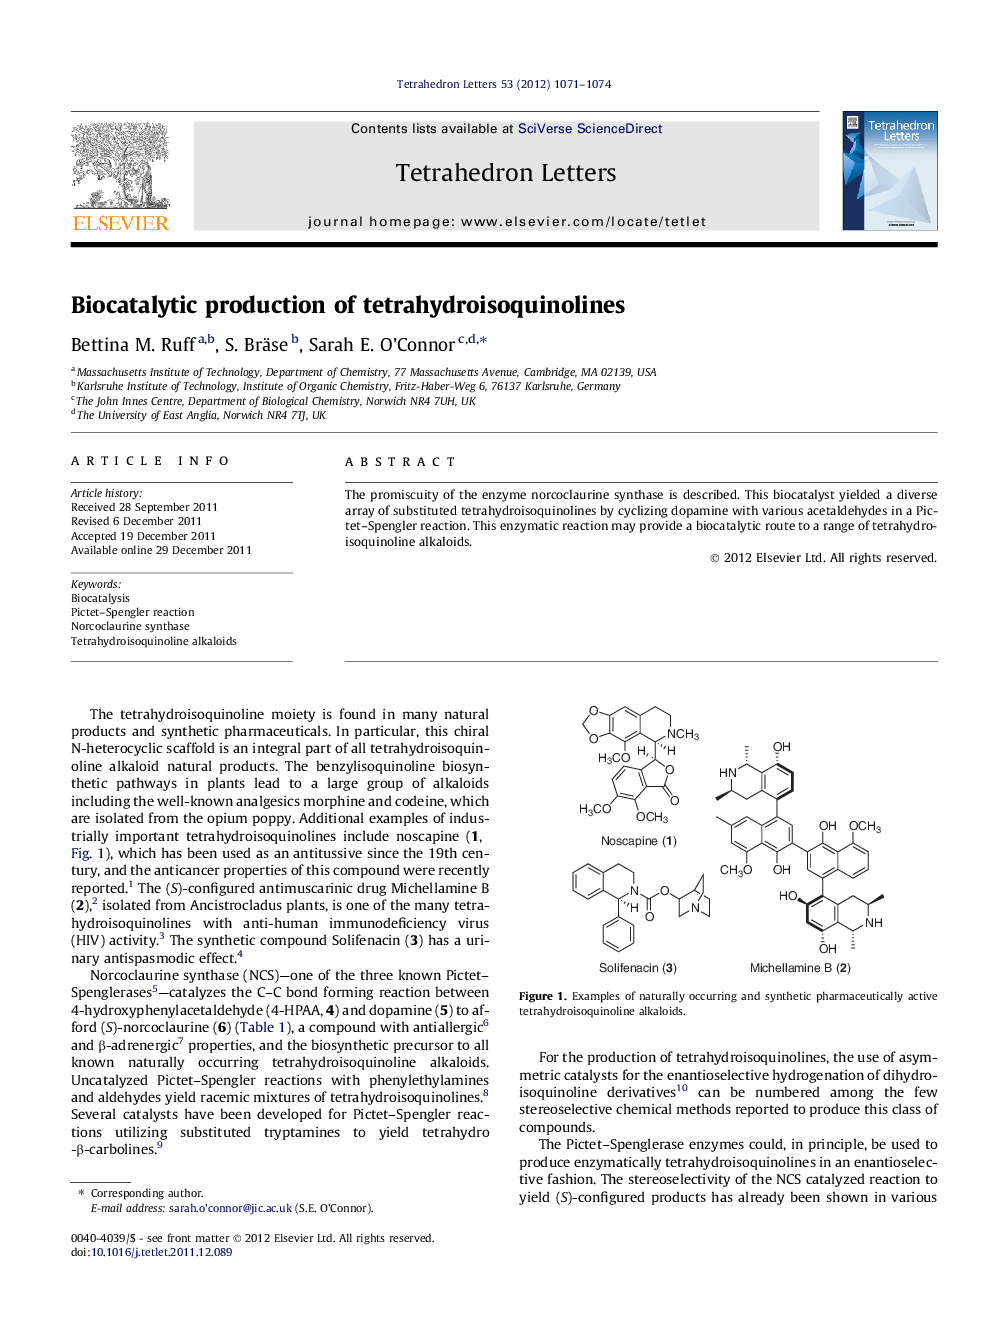 Biocatalytic production of tetrahydroisoquinolines